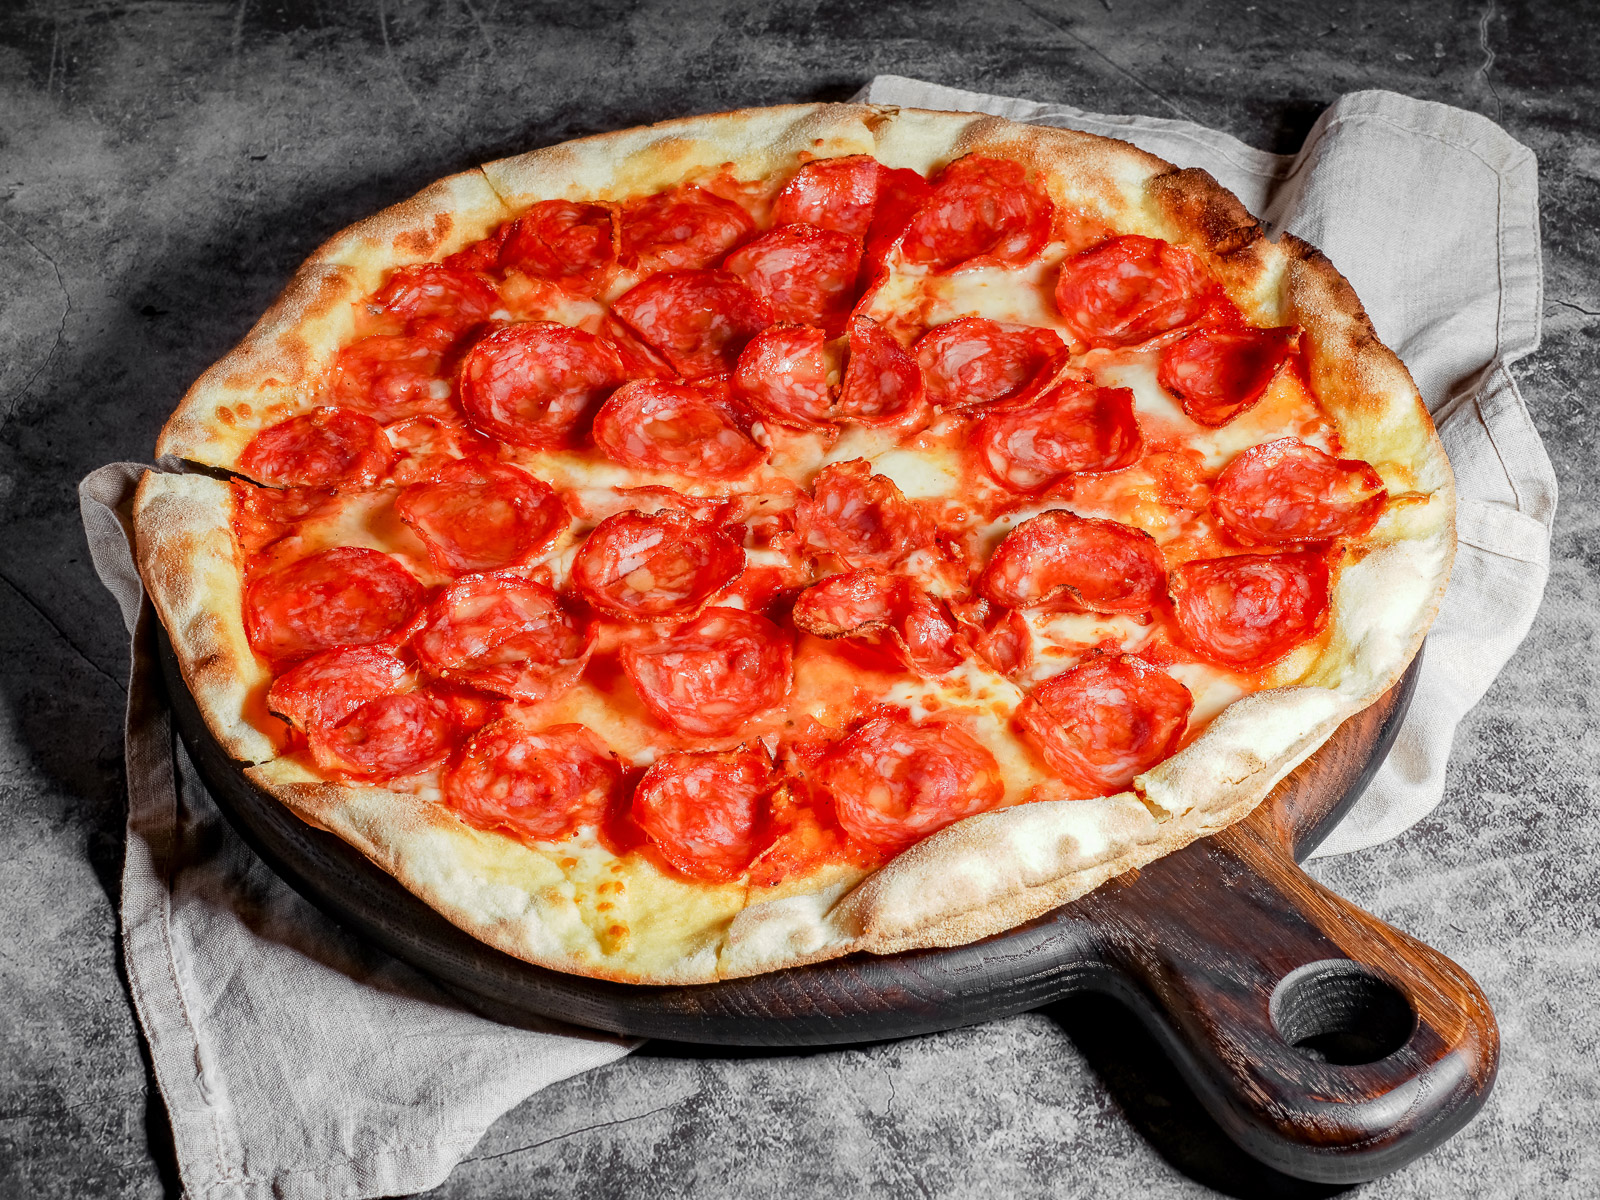 я хочу пиццу песто с пепперони и сосисками так же хочу другую с оливками фото 116